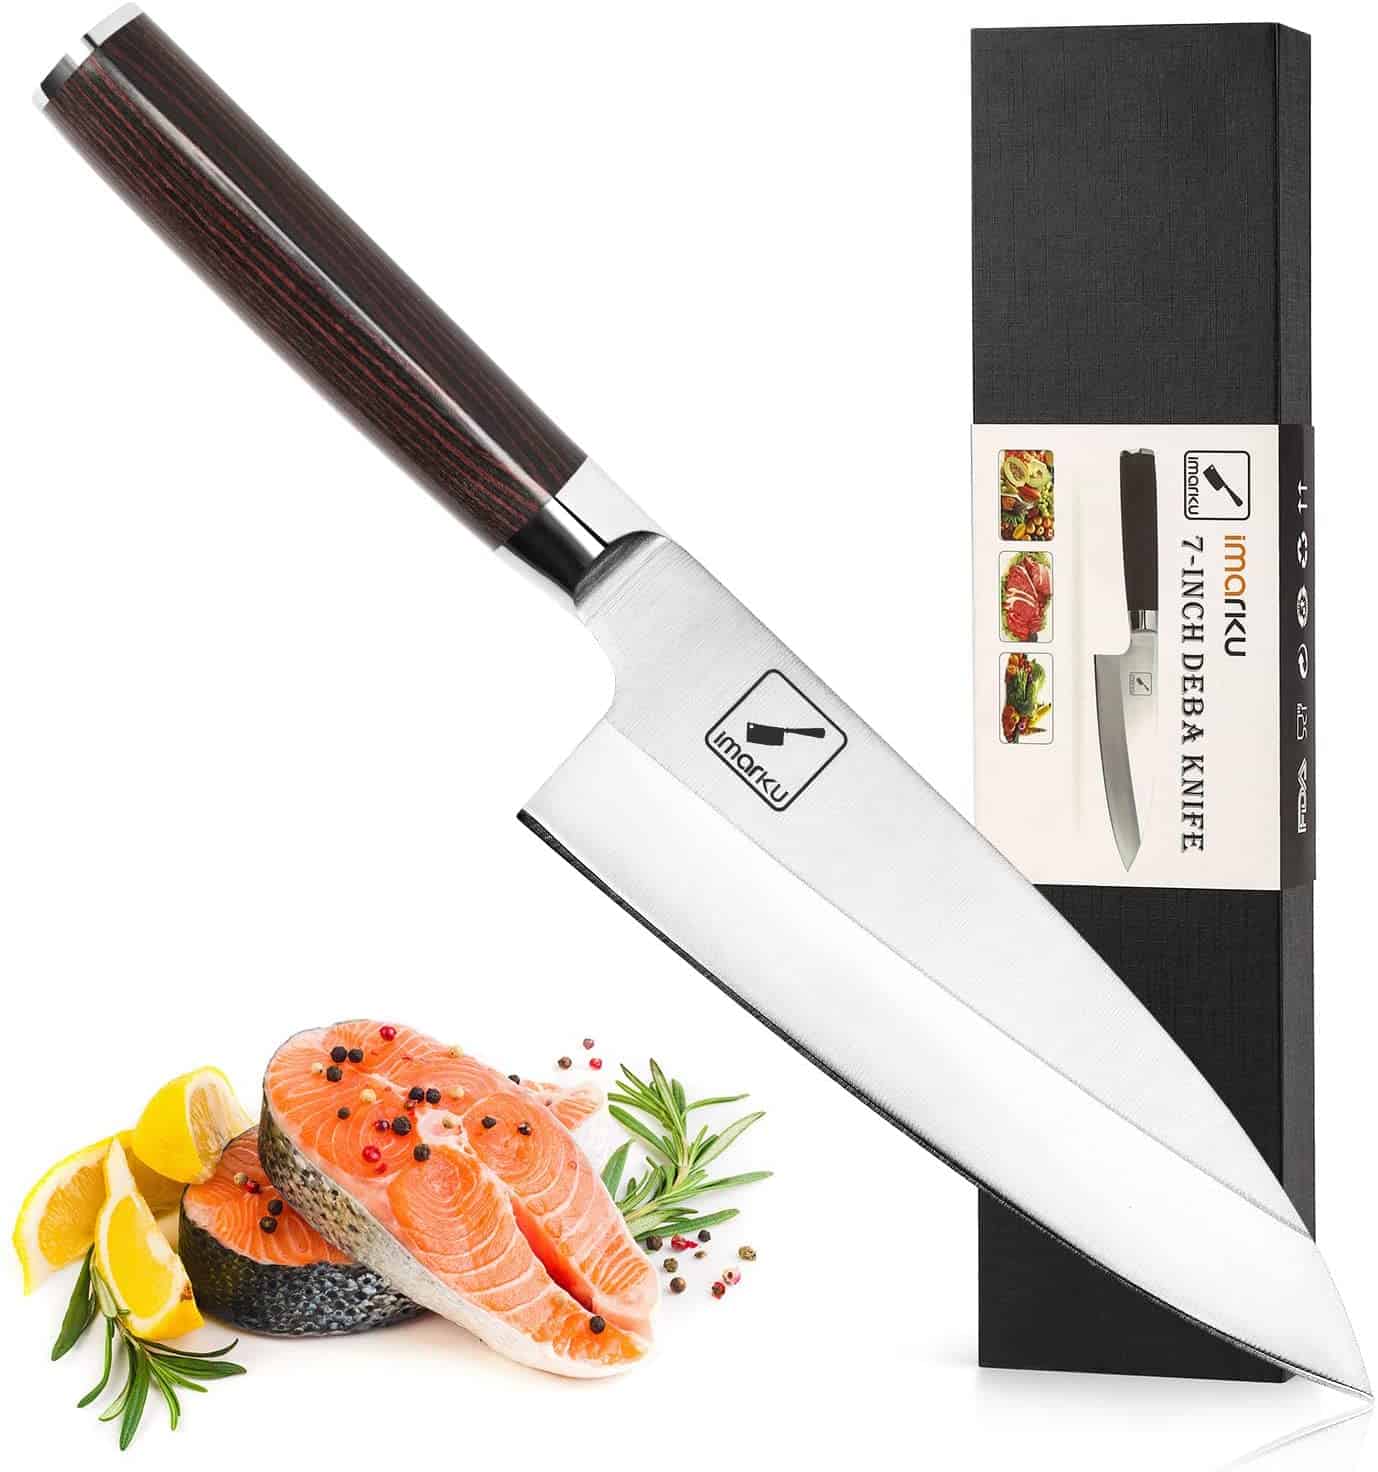 Cuchillo deba de mejor valor: cuchillo para filete de pescado imarku de 7 pulgadas